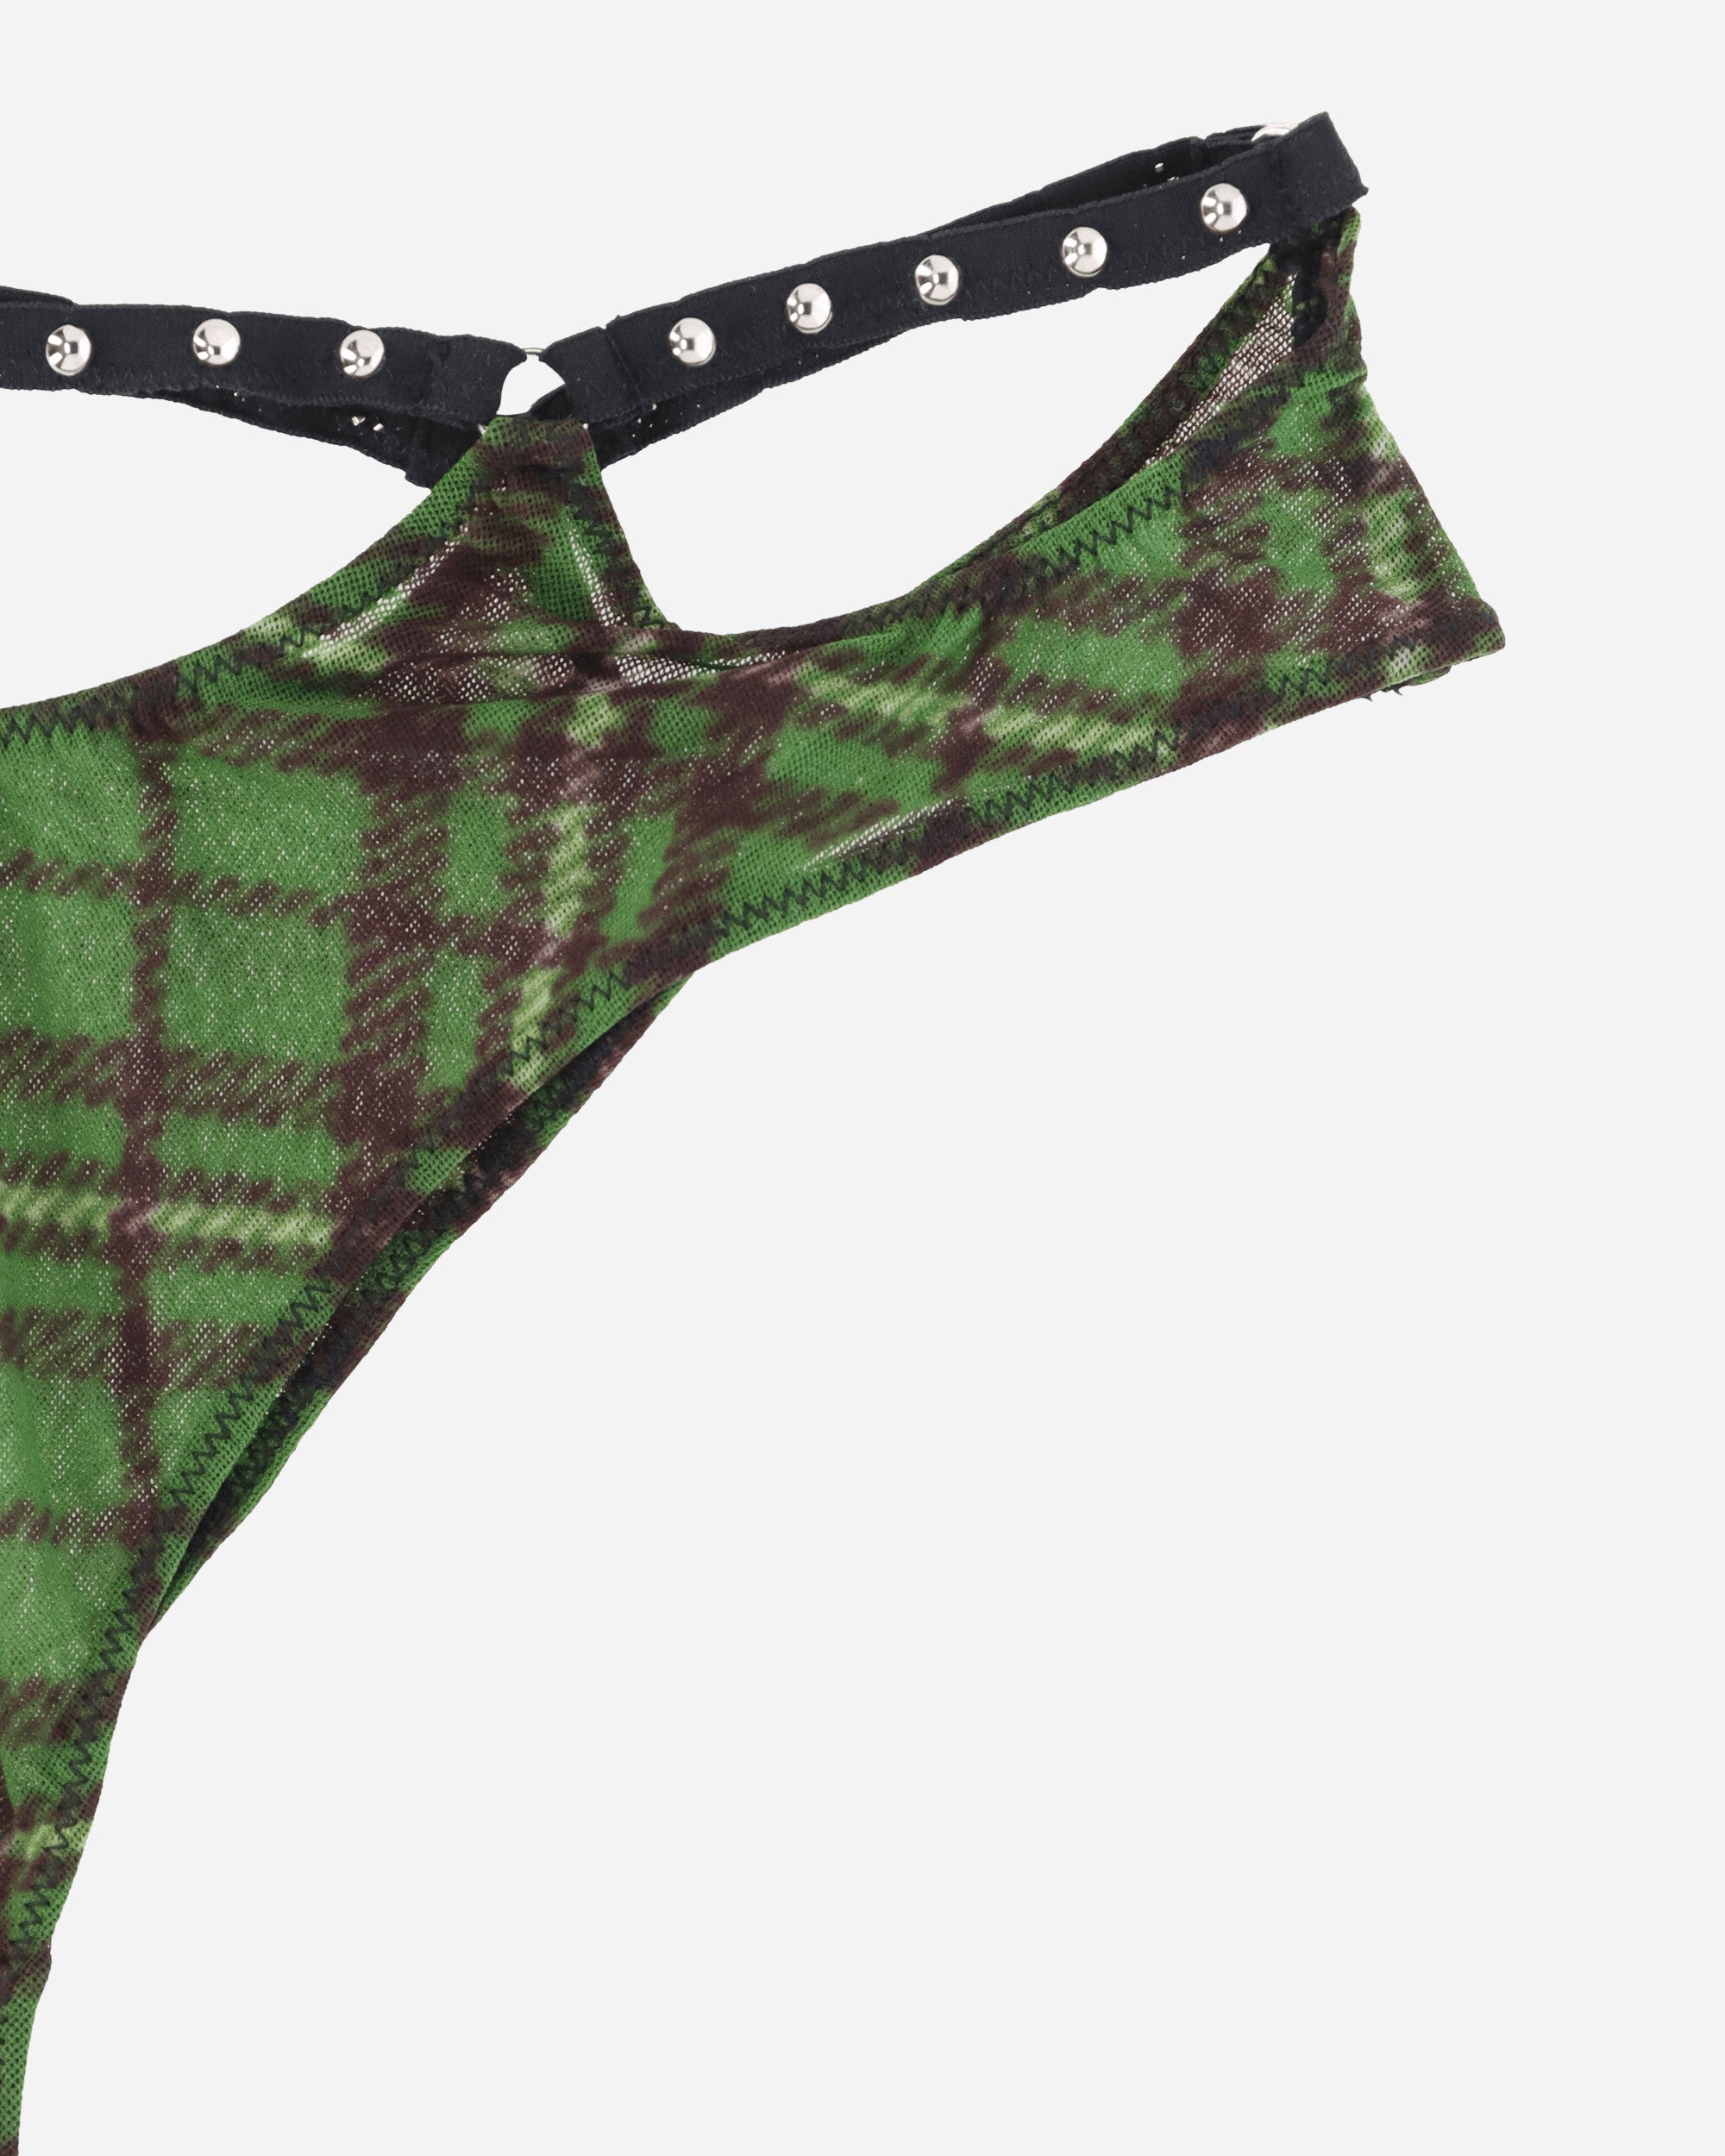 Priscavera Wmns Studded Thong Green Tartan Underwear Thongs 008024-107 GT